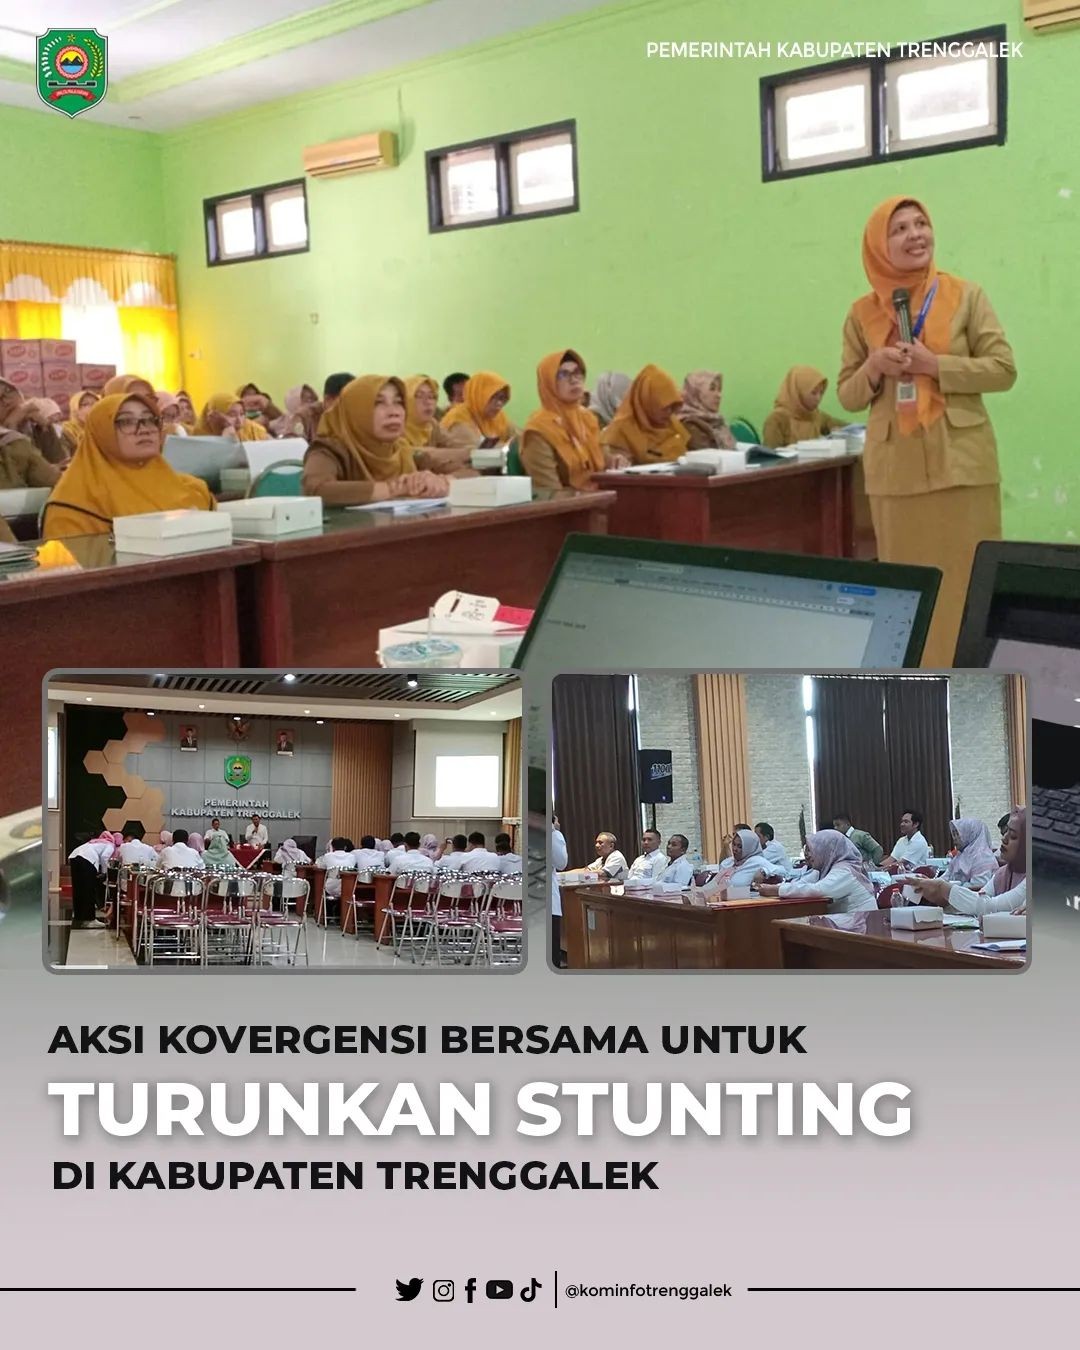 Aksi Kovergensi Bersama Untuk Turunkan Stunting di Kabupaten Trenggalek